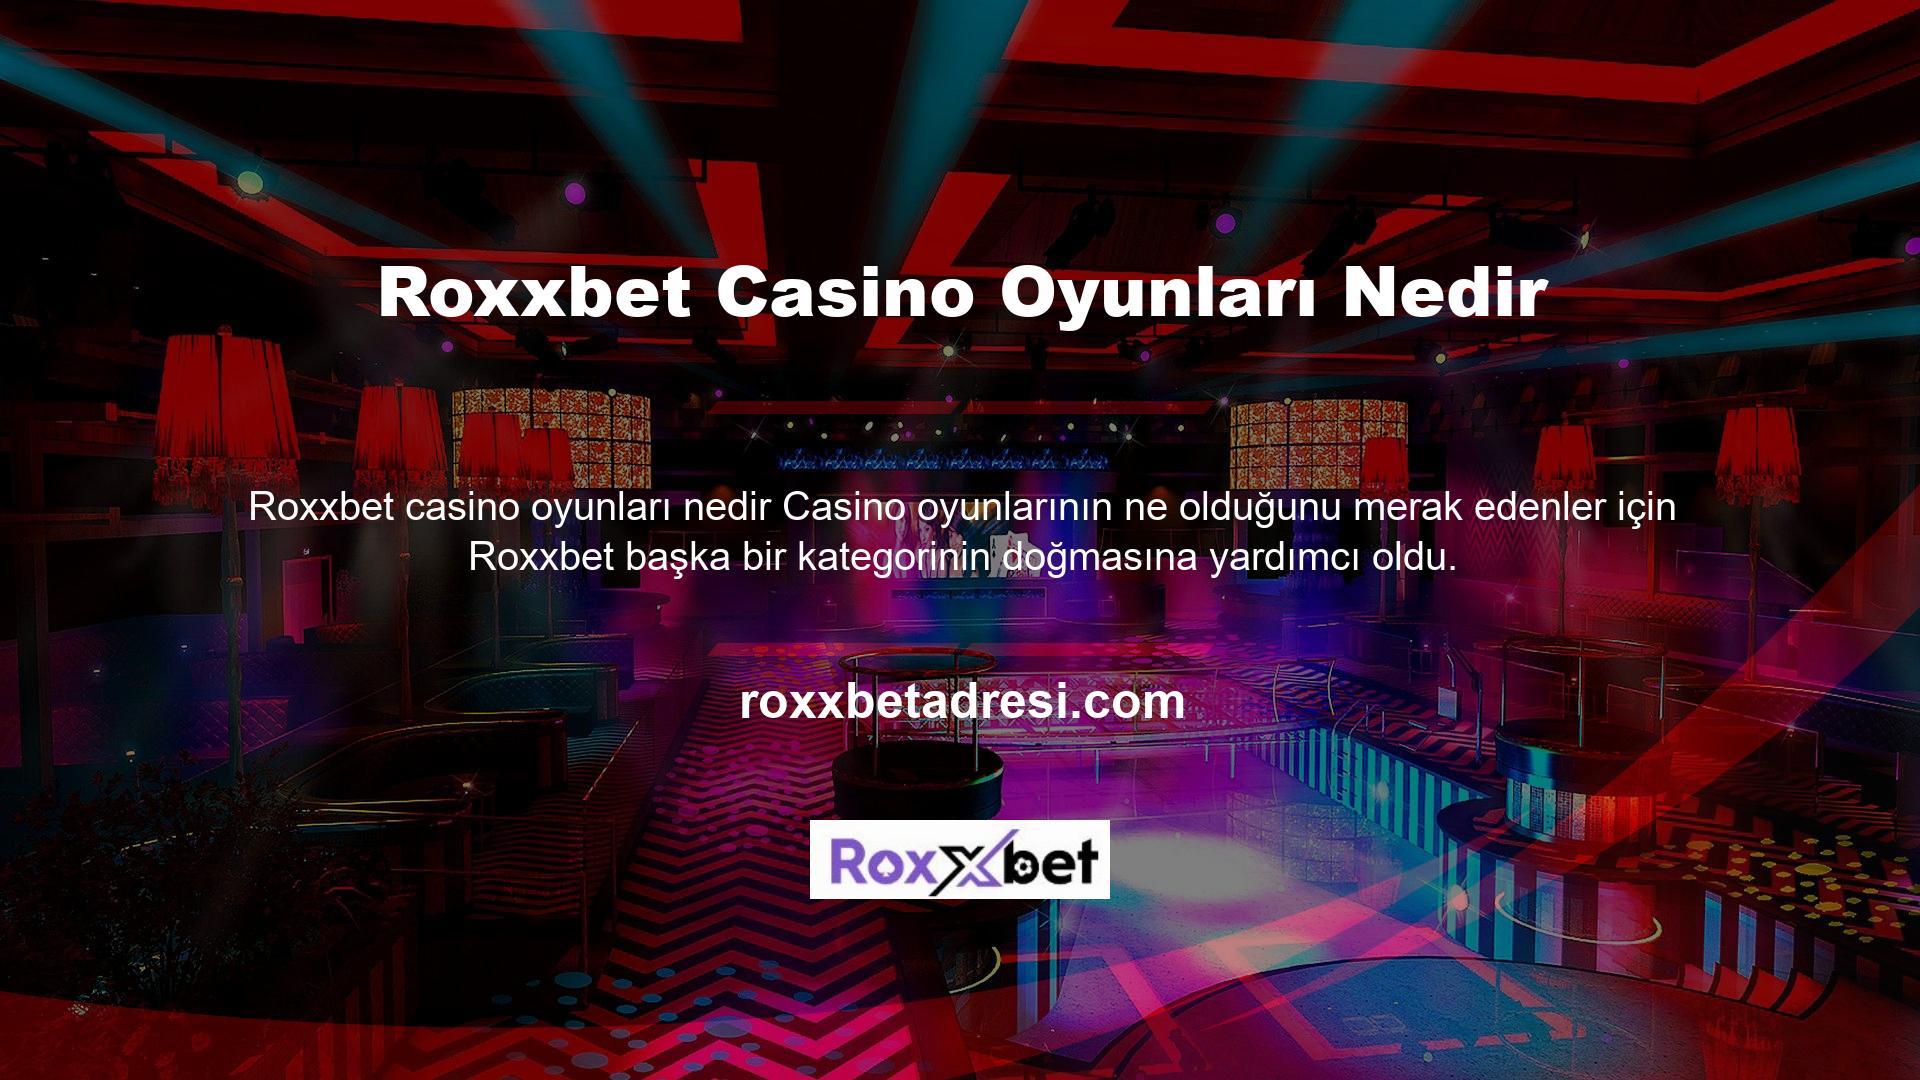 Sitenin en çok kazandıran casino türlerini barındıran platformlar arasında bingo, rulet, poker, blackjack, slot, bakara ve diğer stiller yer alıyor